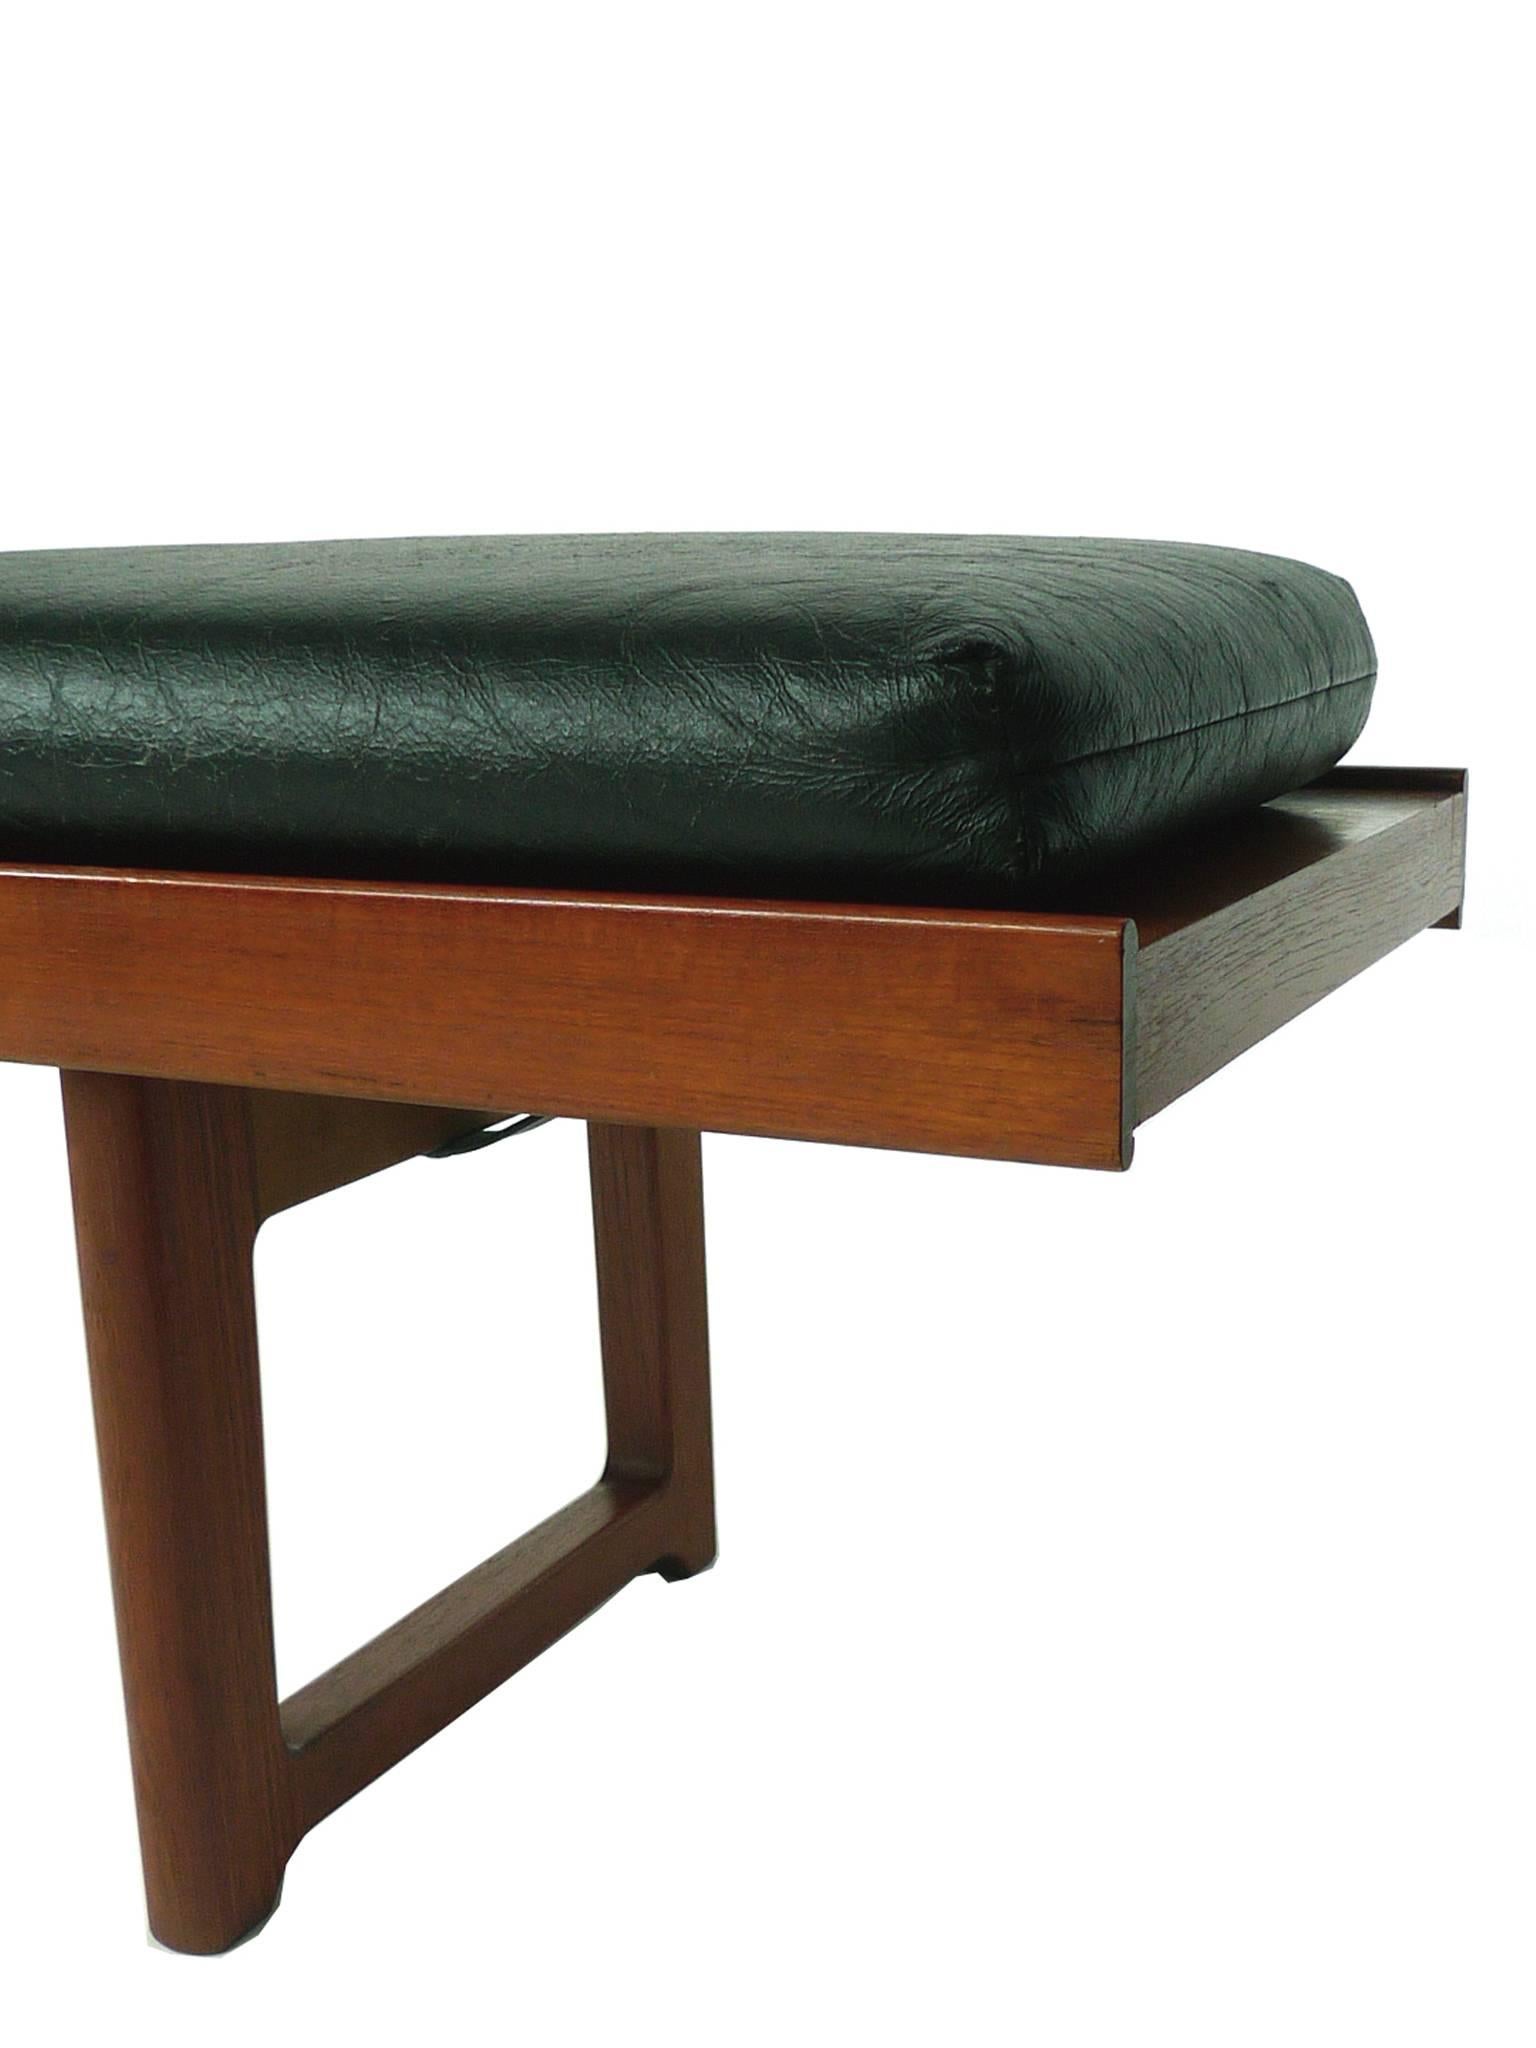 Set of Two Solid Teak Bench-Tables by Torbjørn Afdal for Bruksbo, Norway 2